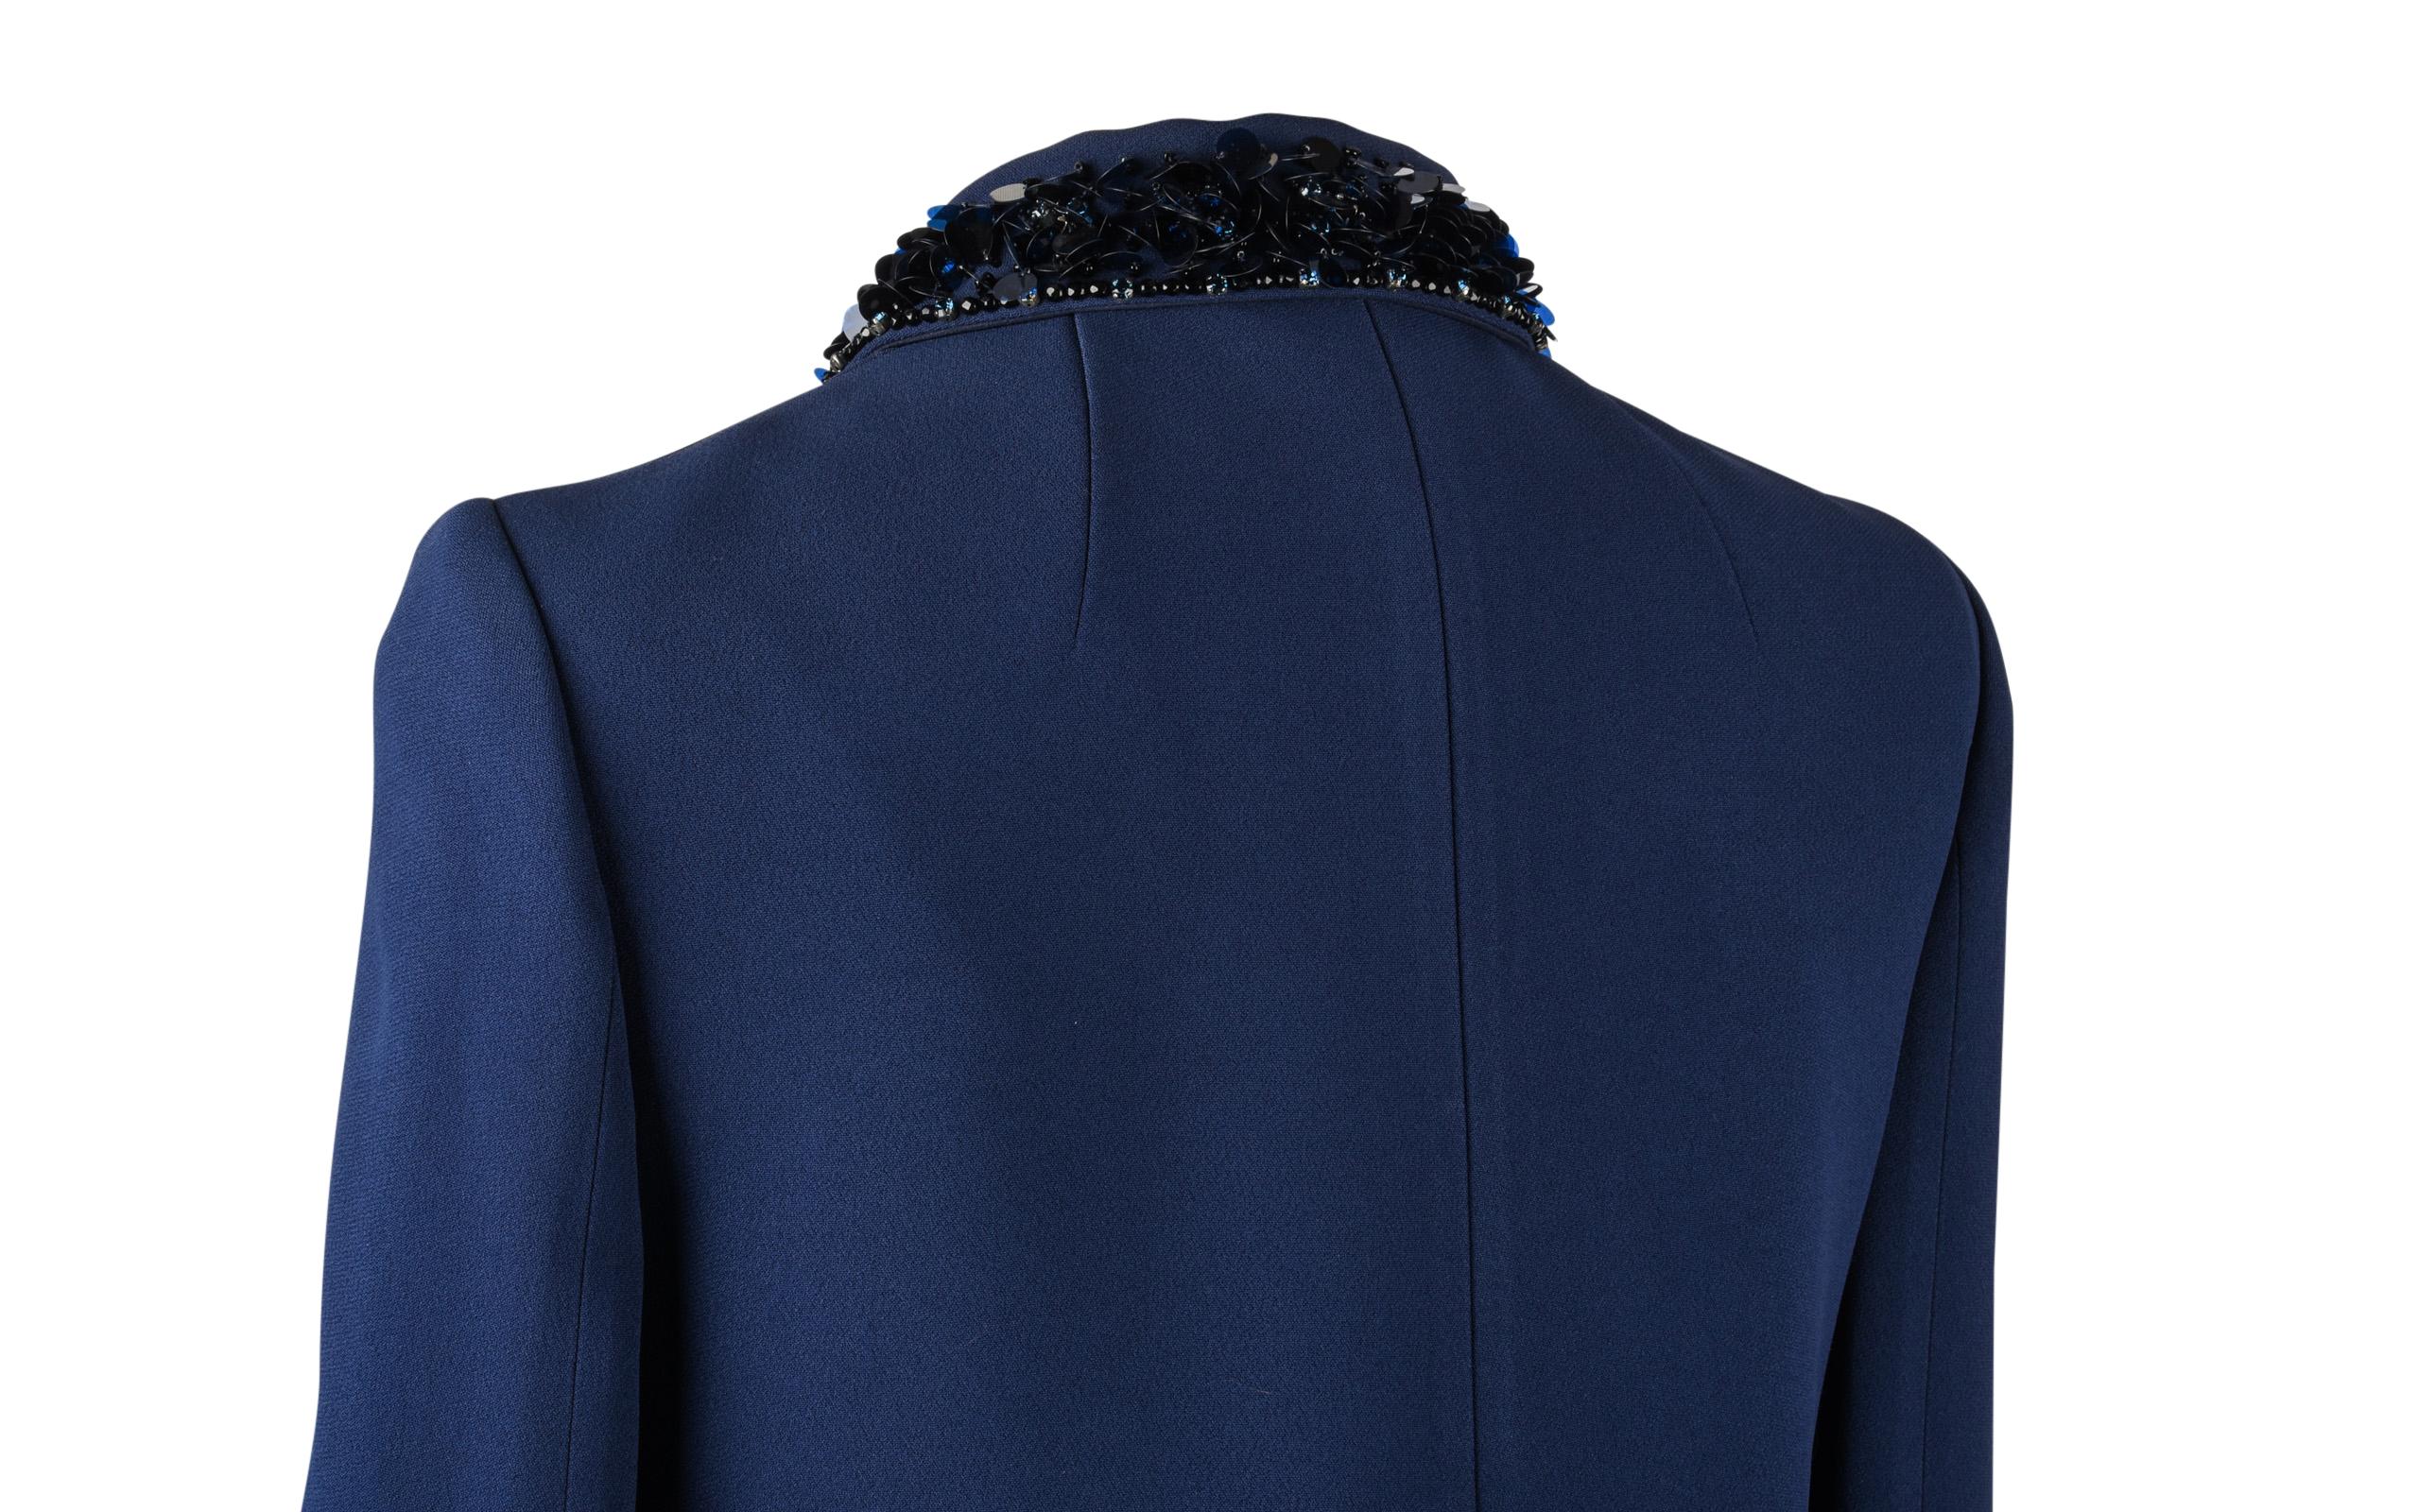 Miu Miu Jacket Navy Embellished Collar / Pockets 3/4 Sleeve 42 4